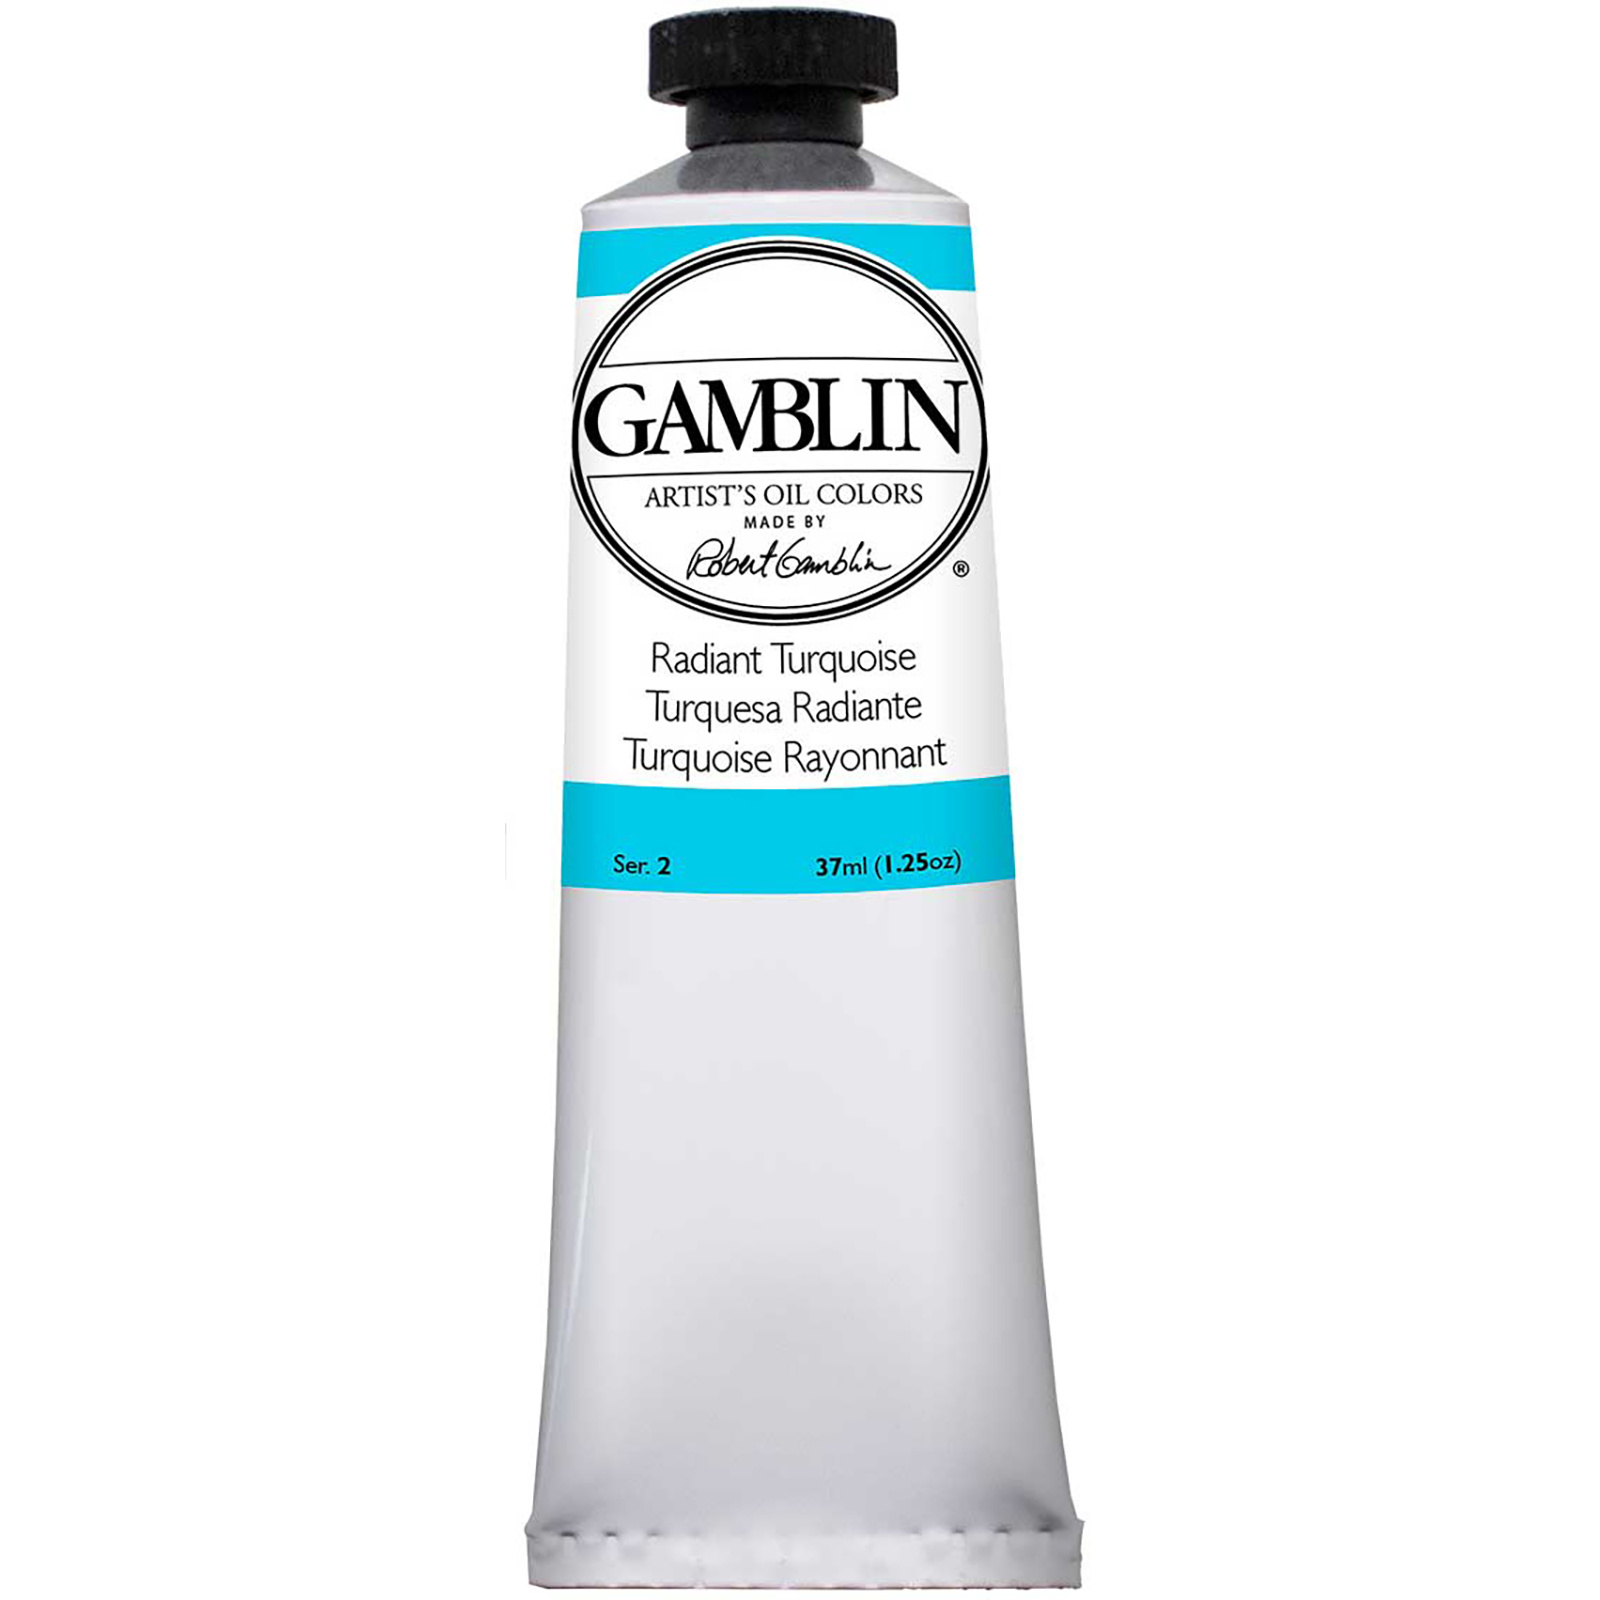 Gamblin Artist Grade Oil Colors, 37ml Studio Tubes, Radiant Turquoise